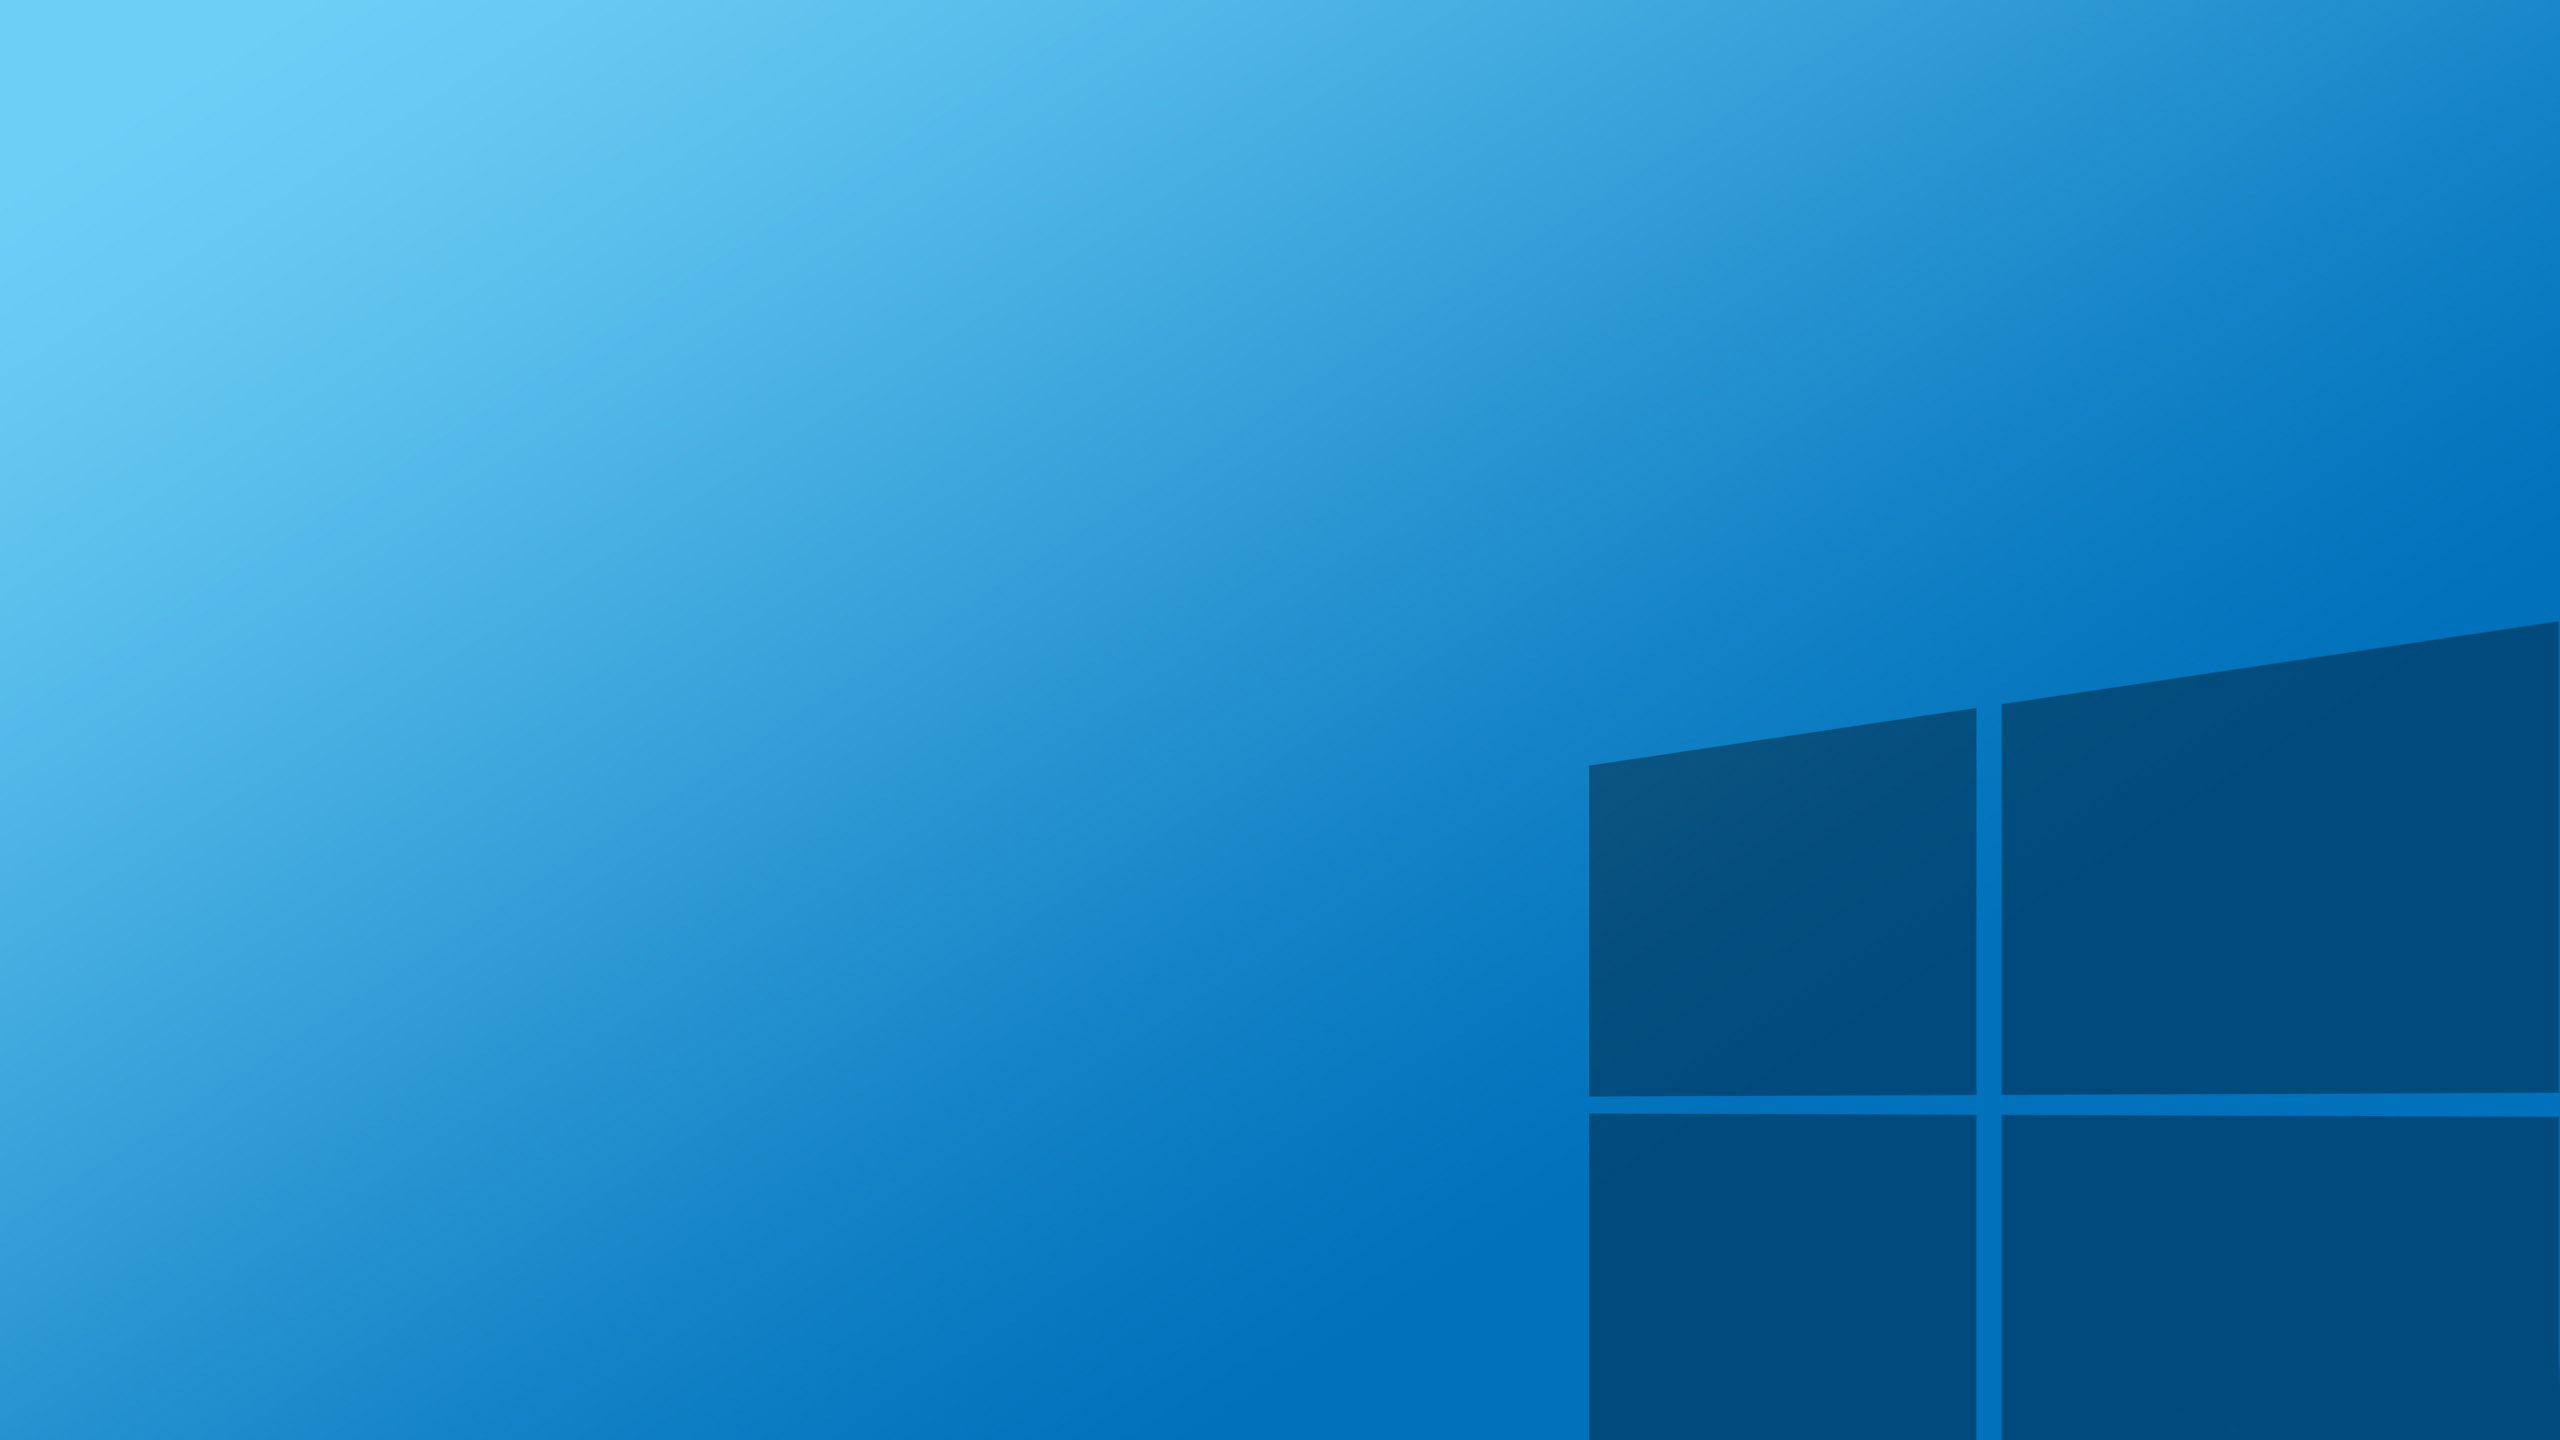 Hãy trang trí máy tính của bạn bằng những hình nền Windows 10 HD mới nhất năm 2015-2020 hoàn toàn miễn phí! Với hàng ngàn lựa chọn đẹp mắt và chất lượng cao, bạn sẽ có thể tìm thấy một hình nền hoàn hảo cho mình mà không tốn bất kỳ chi phí nào.